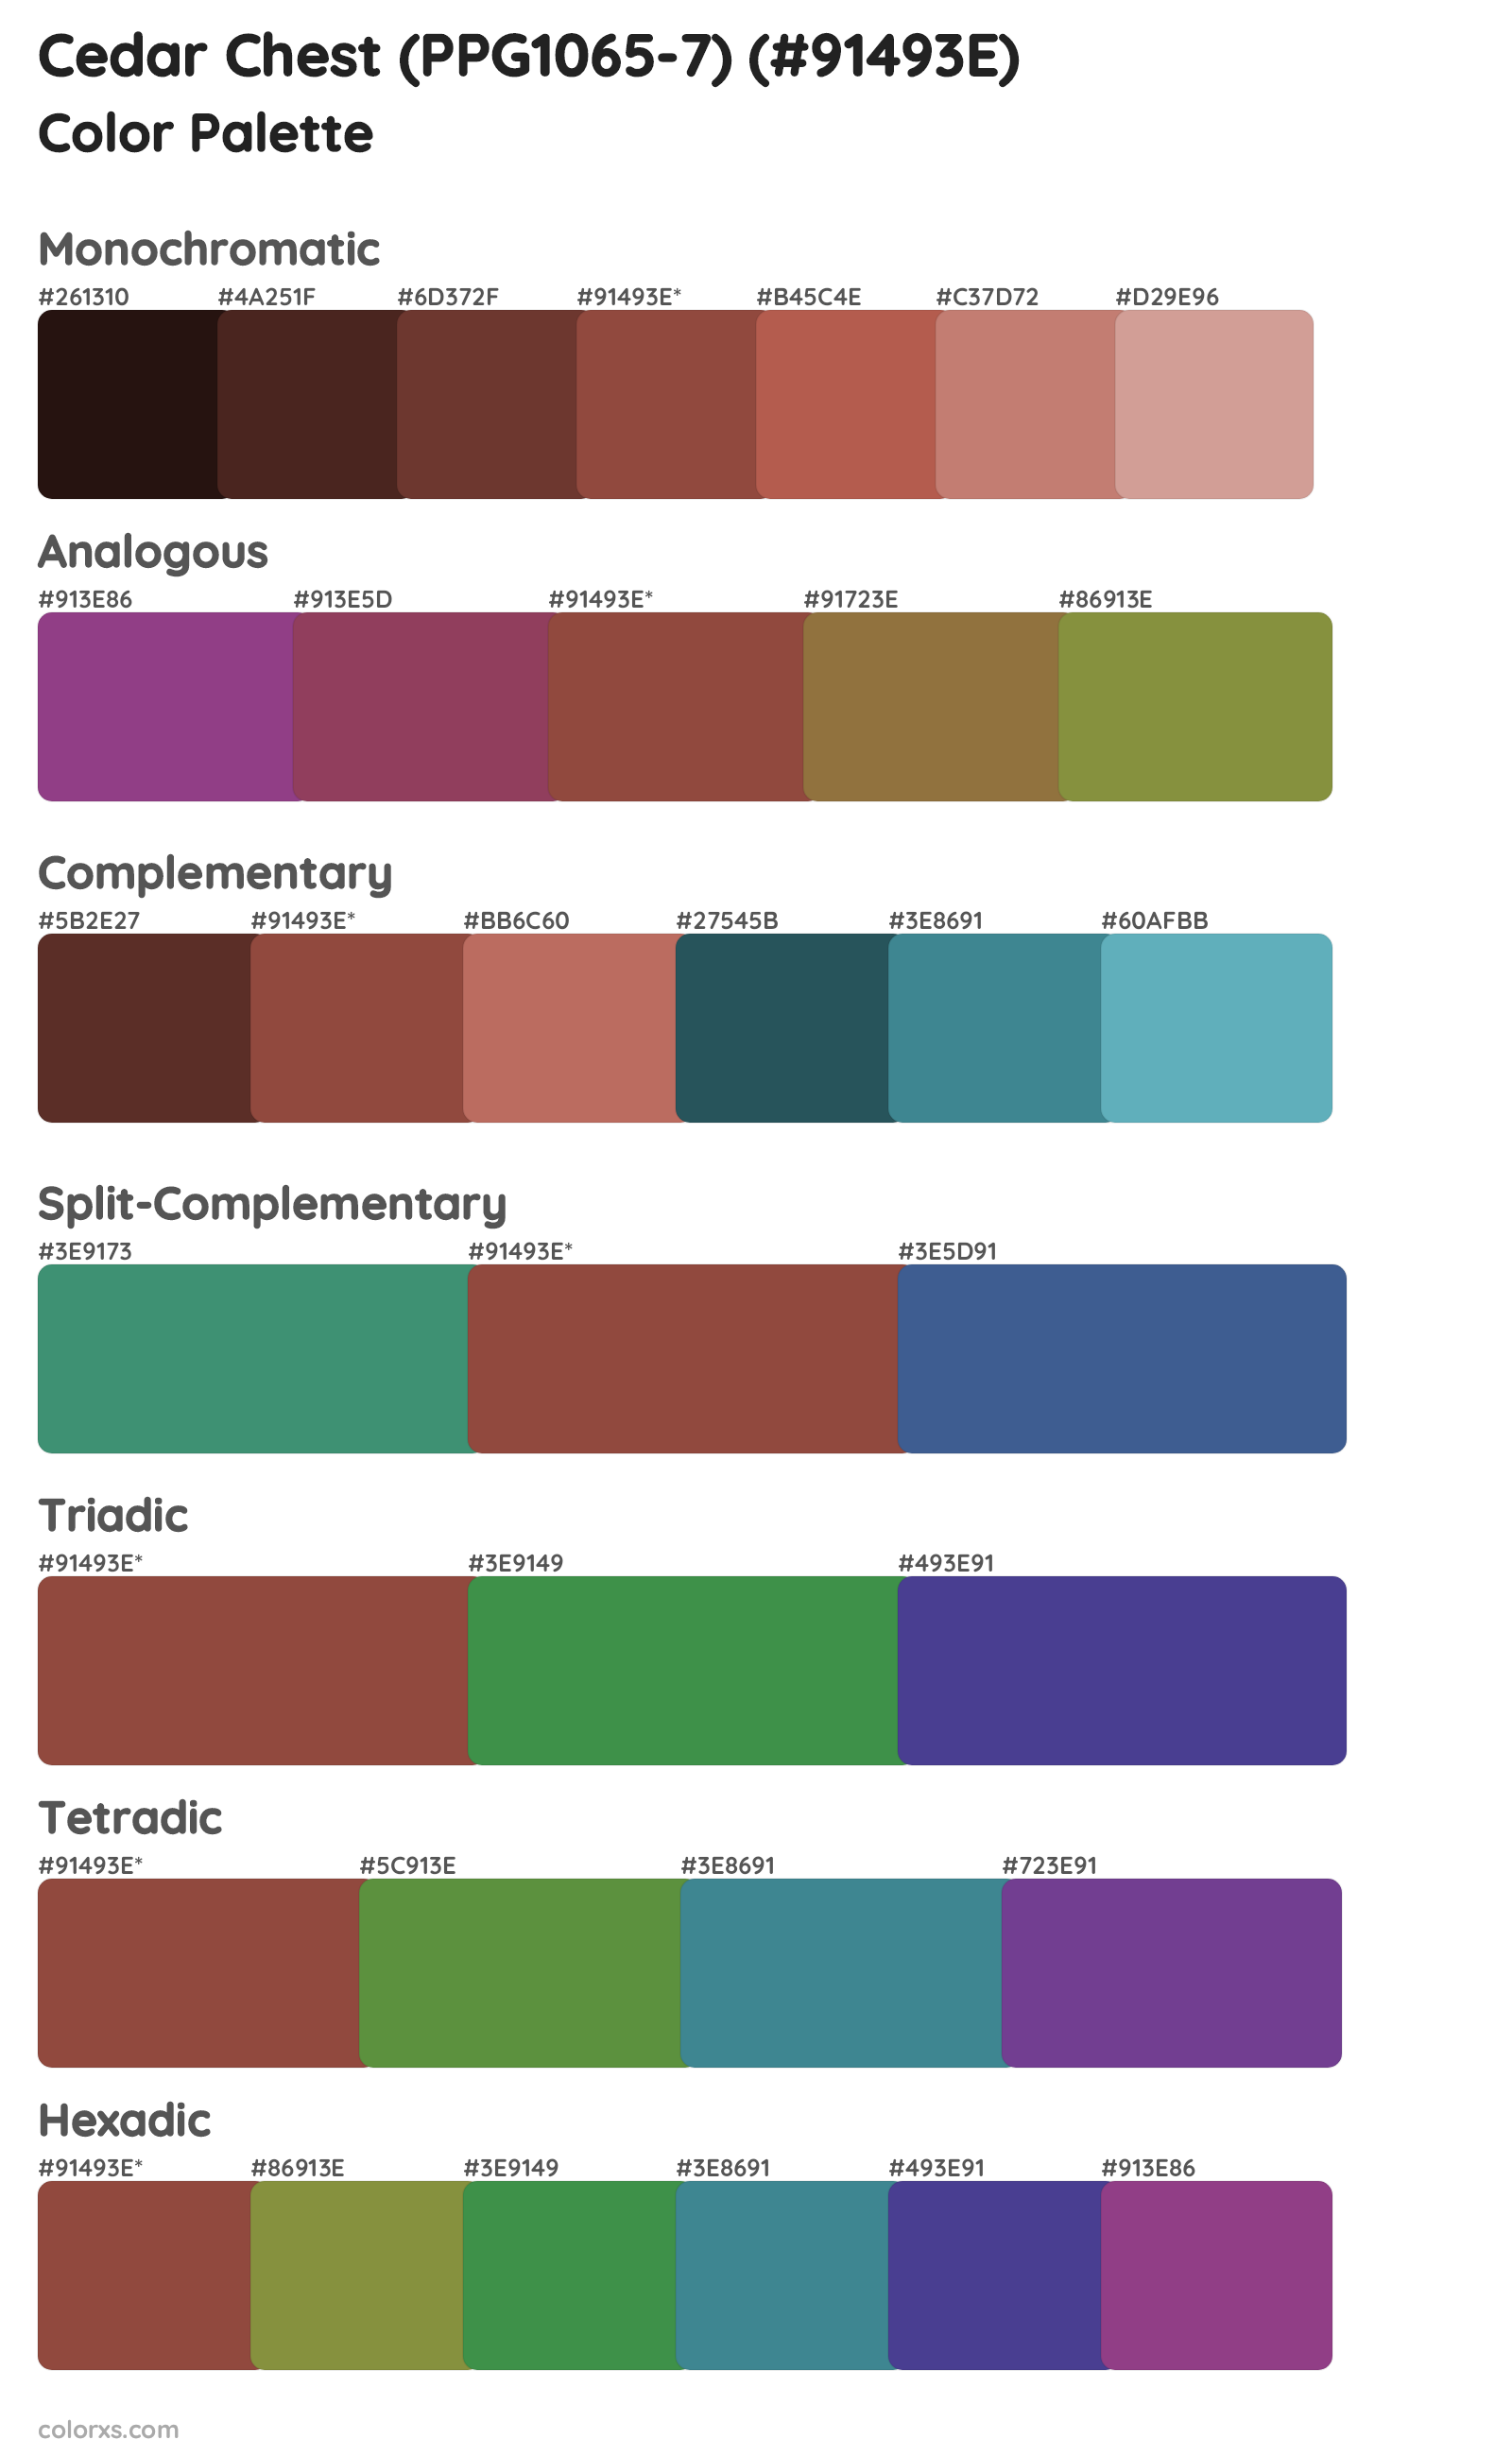 Cedar Chest (PPG1065-7) Color Scheme Palettes